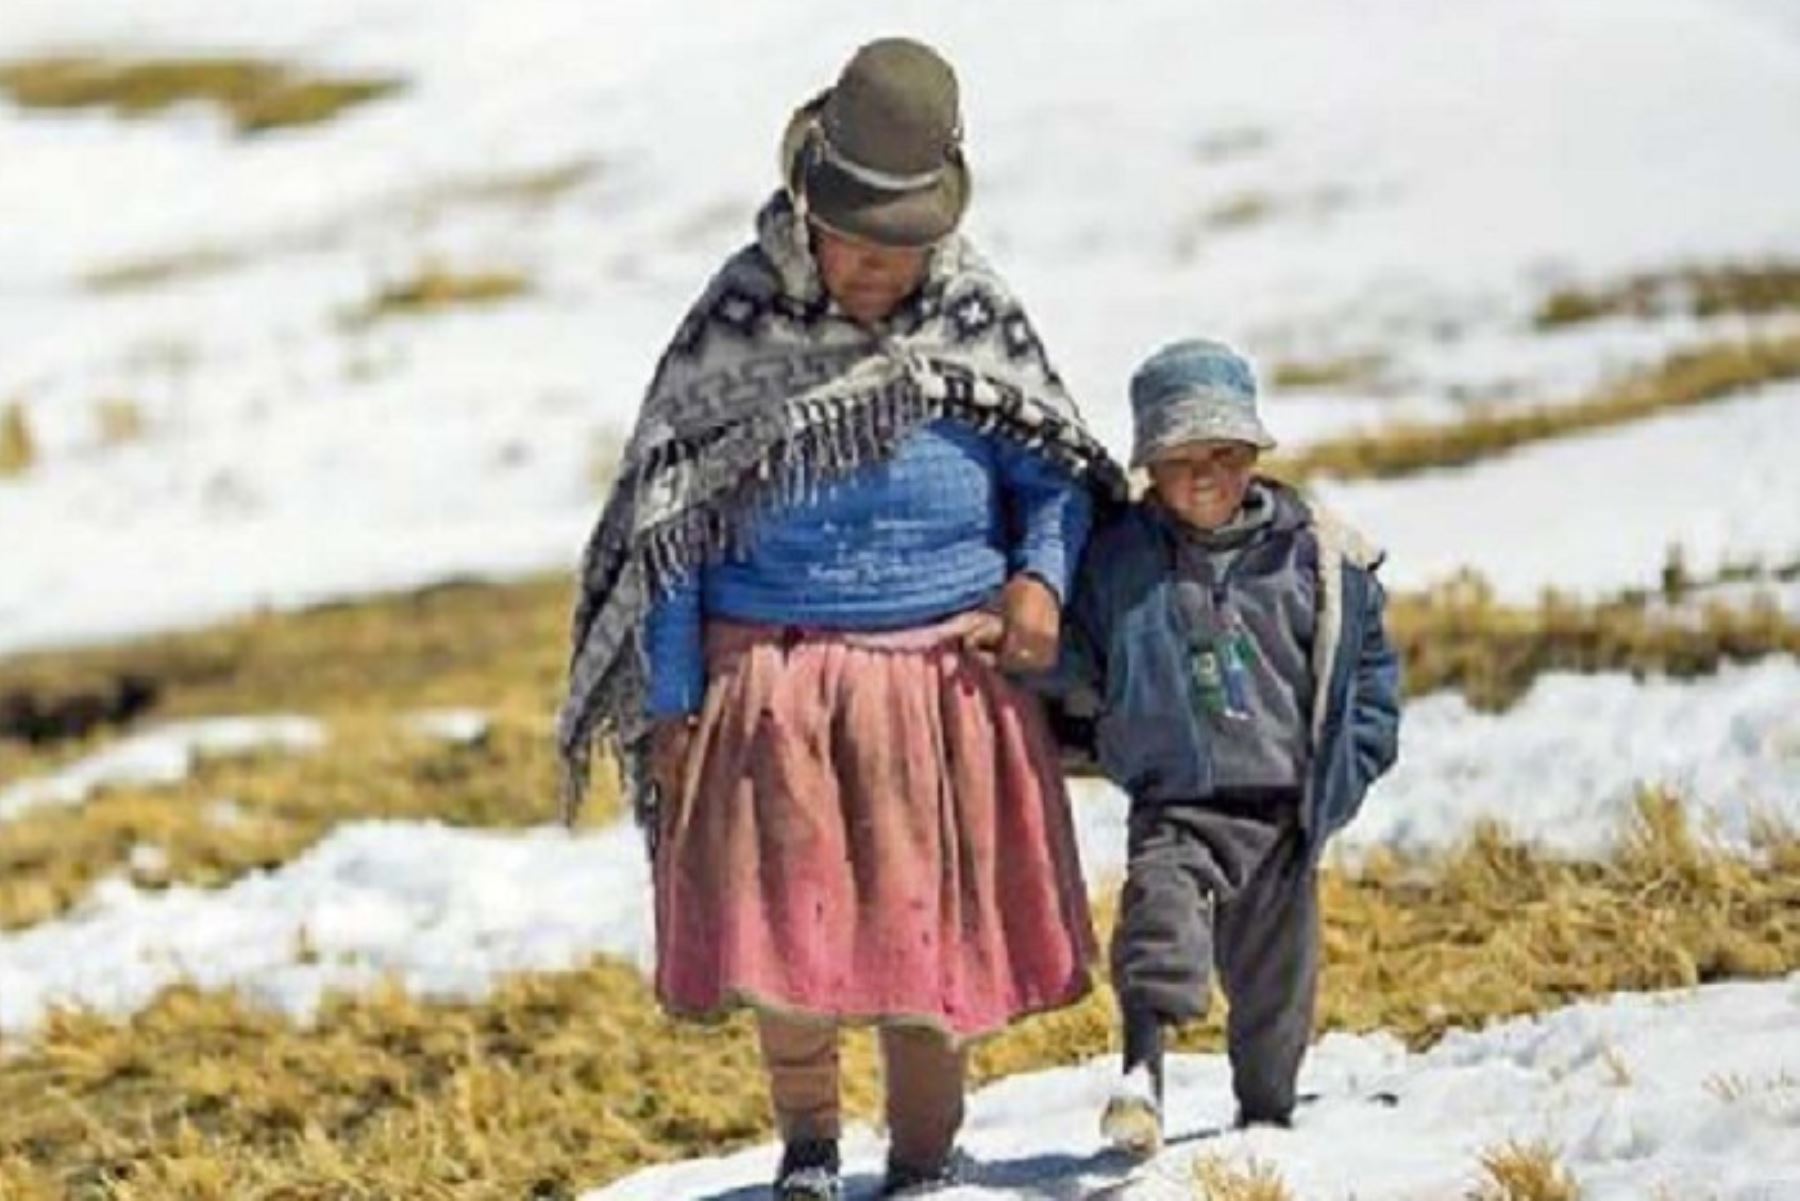 El distrito de Yanahuara, en la provincia y región Arequipa, registró la temperatura másbaja del sur y de todo el país, al alcanzar  -11.5 grados Celsius en la estación Patahuasi. Foto: Diario Uno.